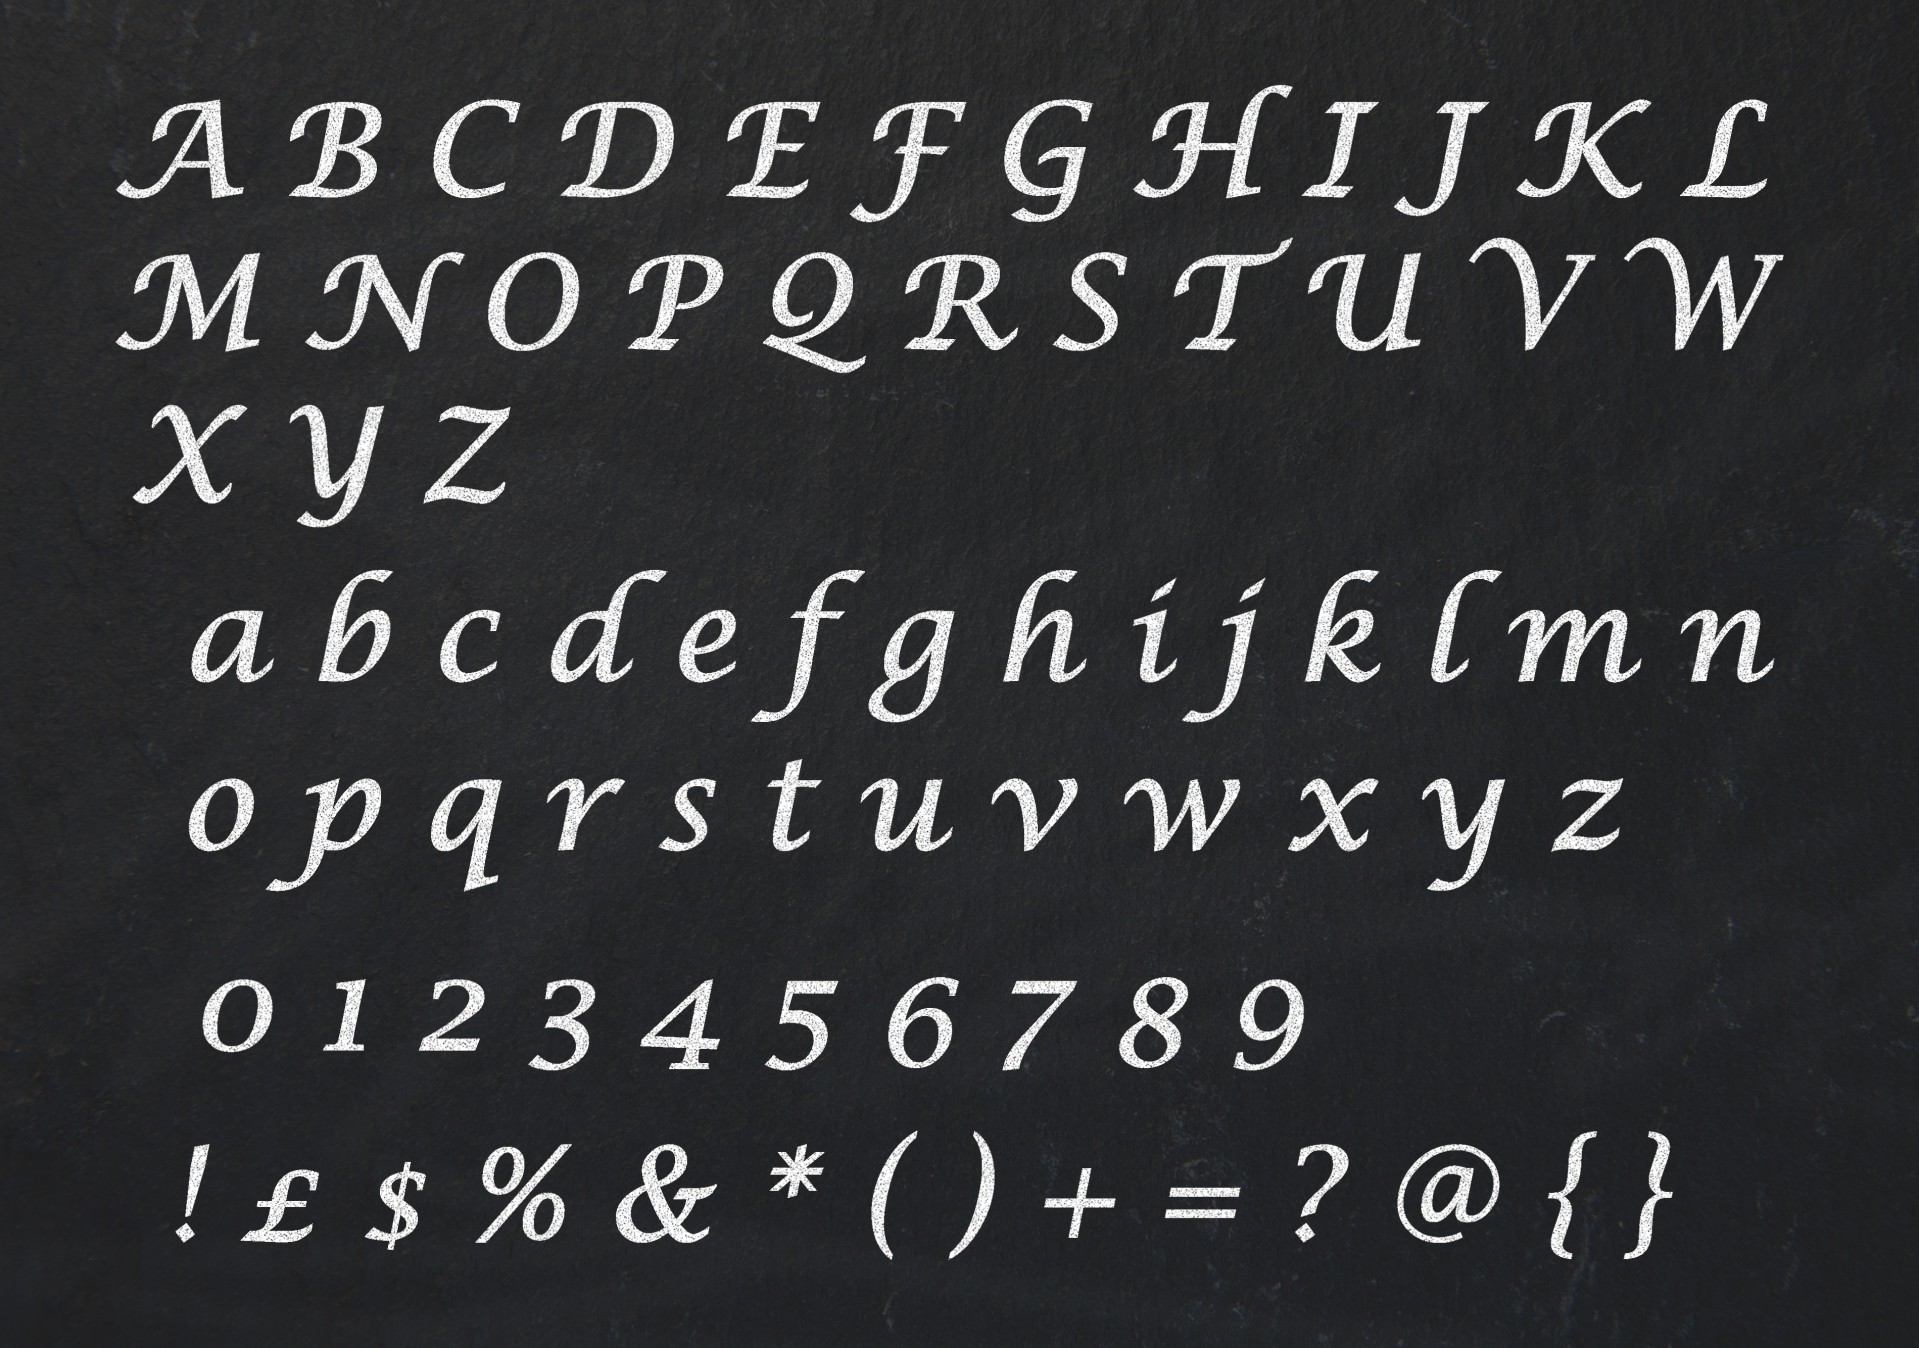 alphabet-letters-clipart-chalkboard-blackboard-free-image-from